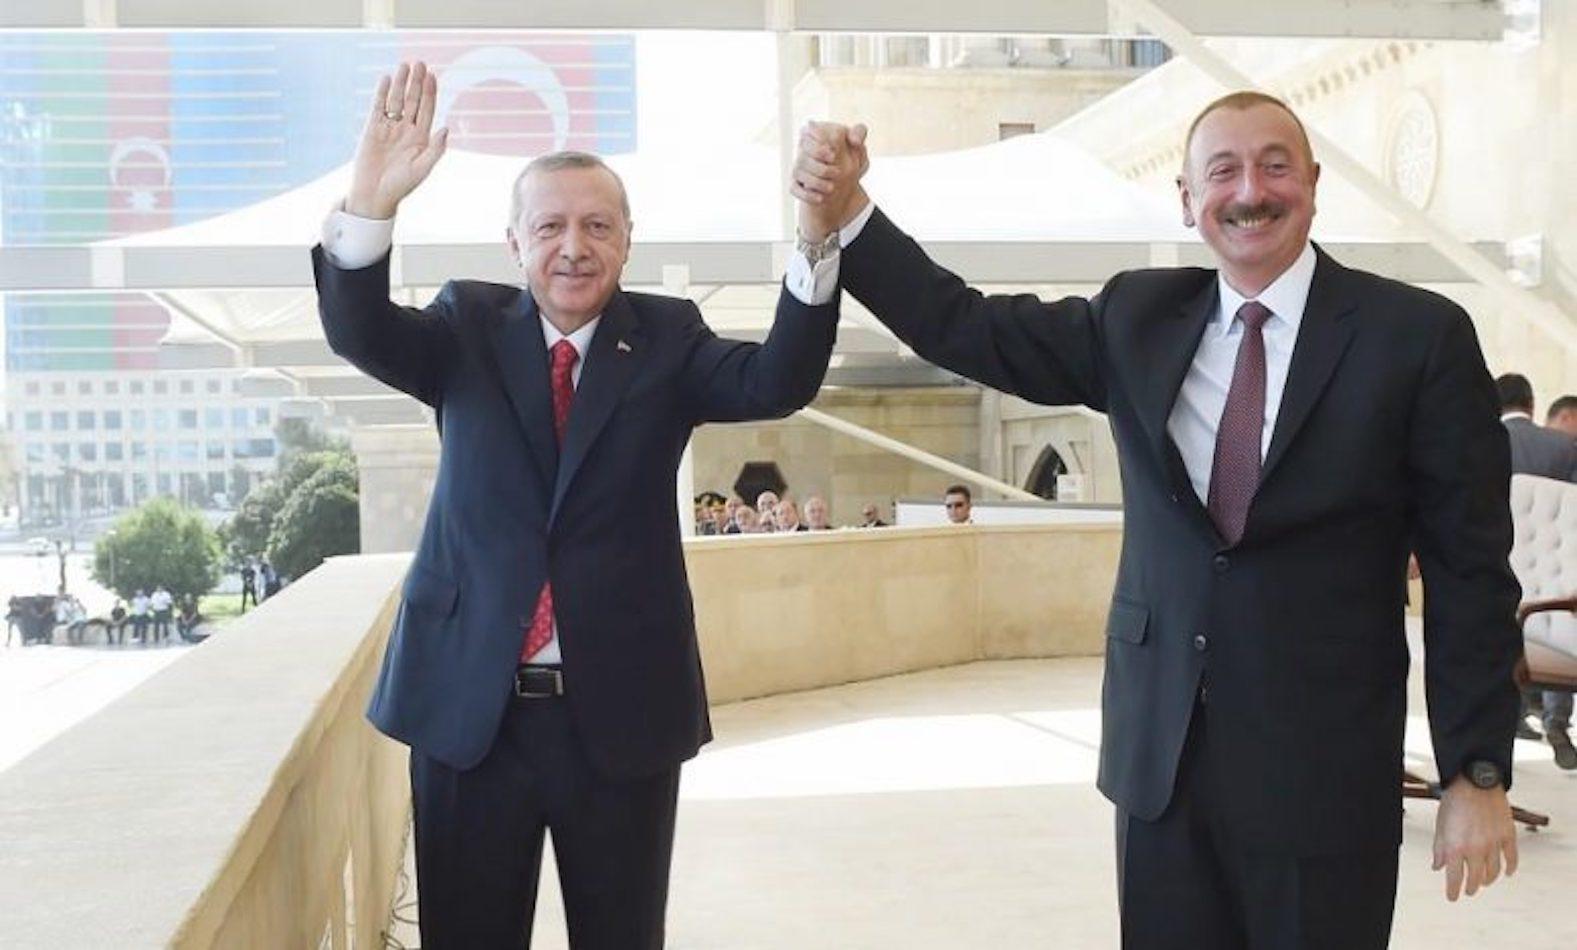 Azerbaijan President Aliyev Dismisses International Calls For Talks Over Karabakh